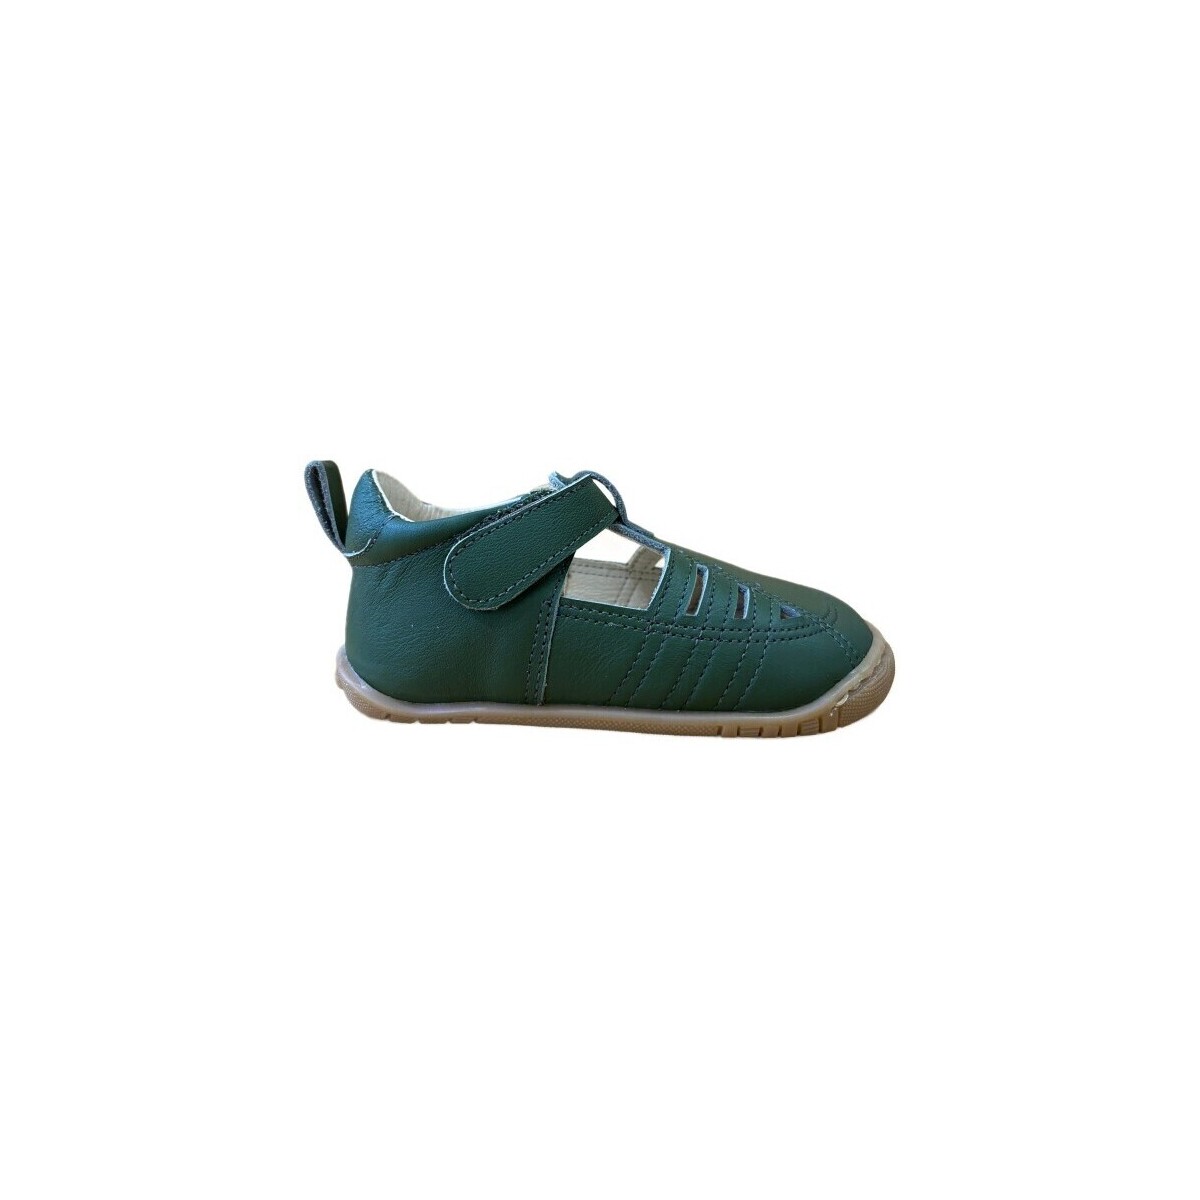 Παπούτσια Sneakers Titanitos 28390-18 Green